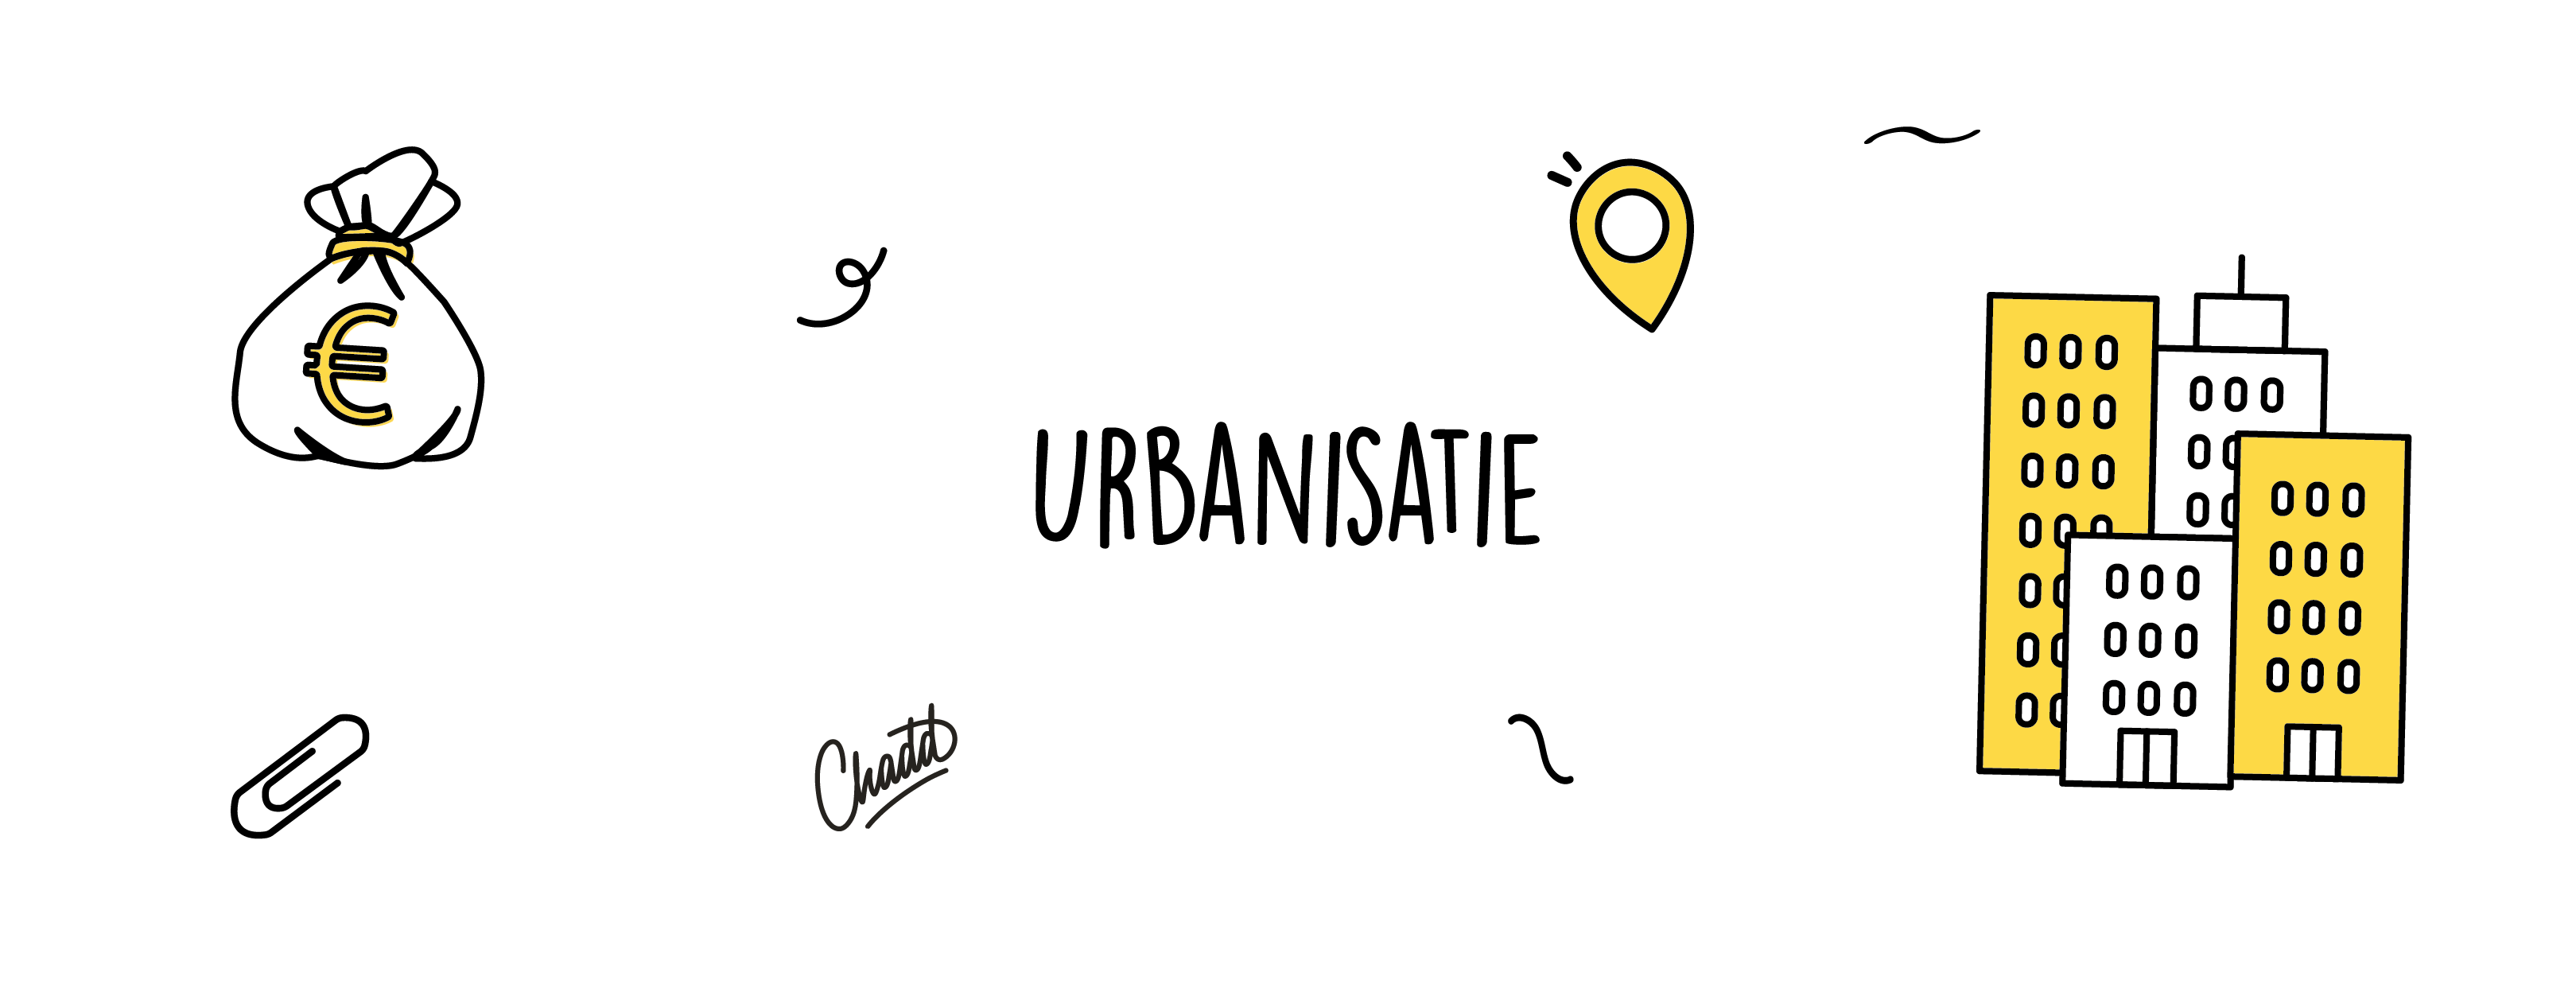 urbanisatie